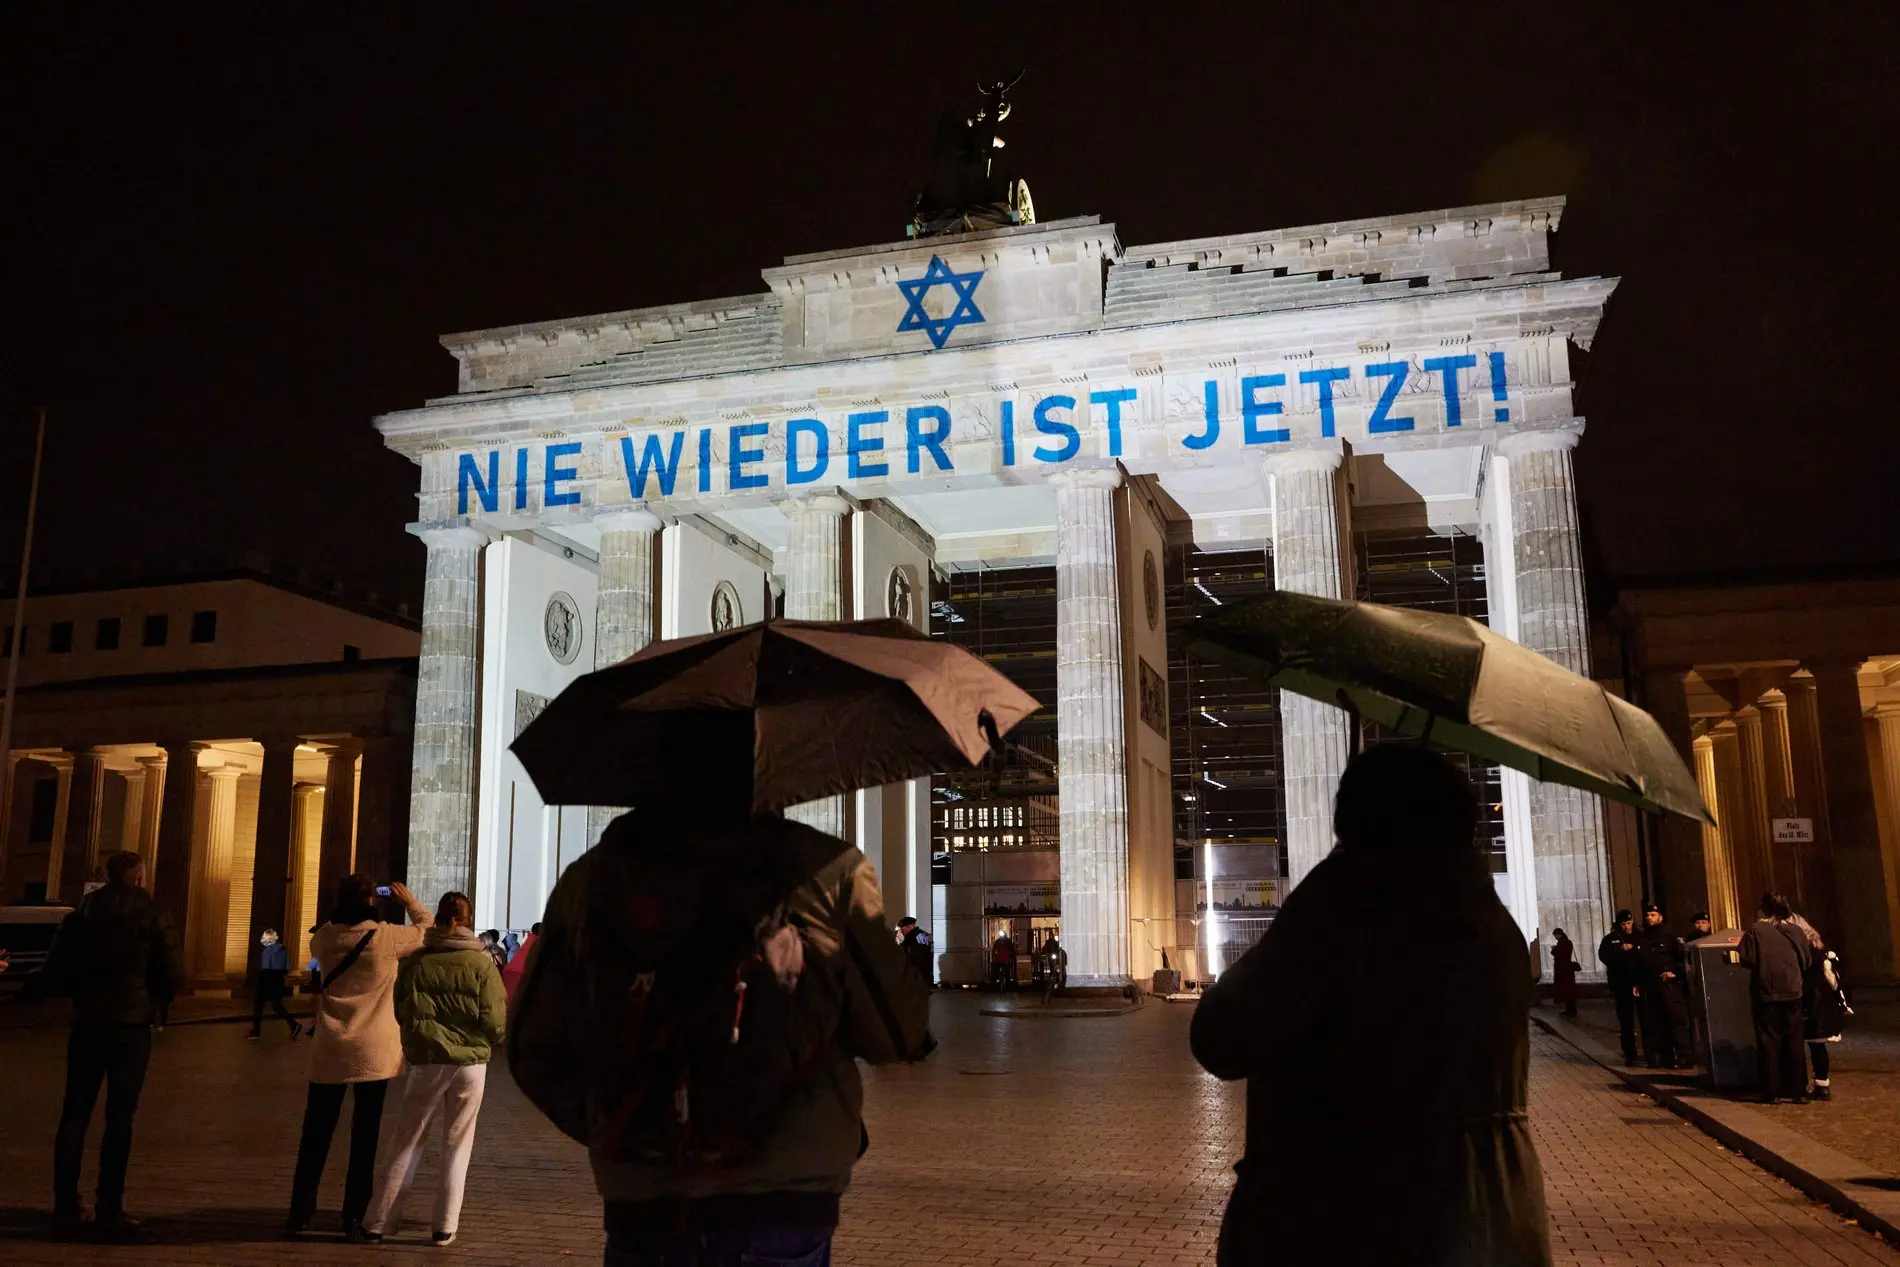 An das Brandenburger Tor wurde der Ausspruch "Nie wieder ist jetzt!" projiziert.